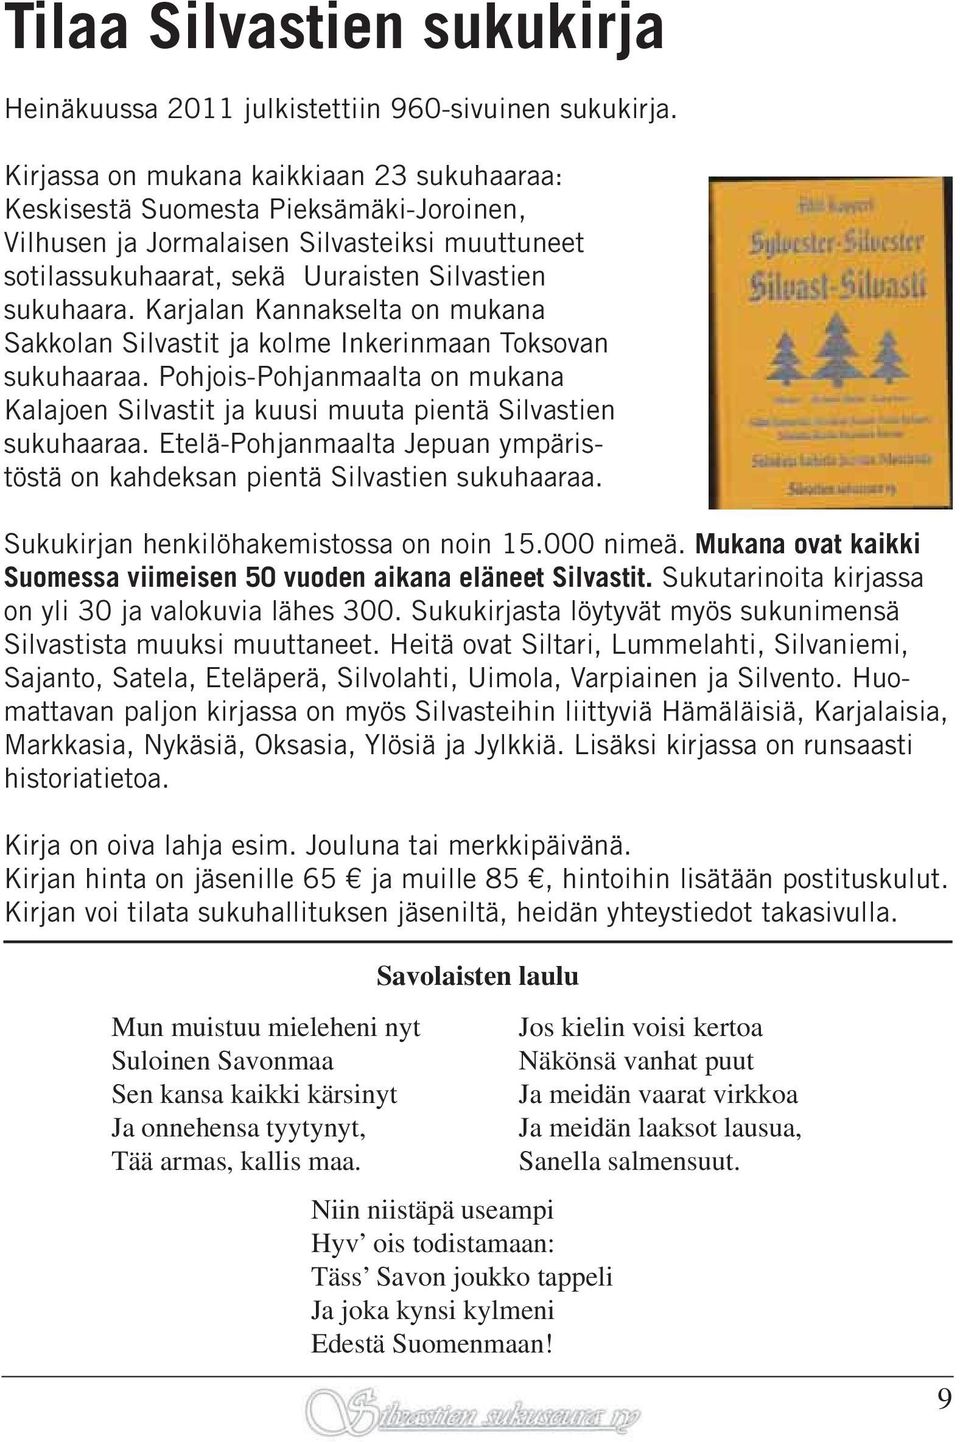 Karjalan Kannakselta on mukana Sakkolan Silvastit ja kolme Inkerinmaan Toksovan sukuhaaraa. Pohjois-Pohjanmaalta on mukana Kalajoen Silvastit ja kuusi muuta pientä Silvastien sukuhaaraa.